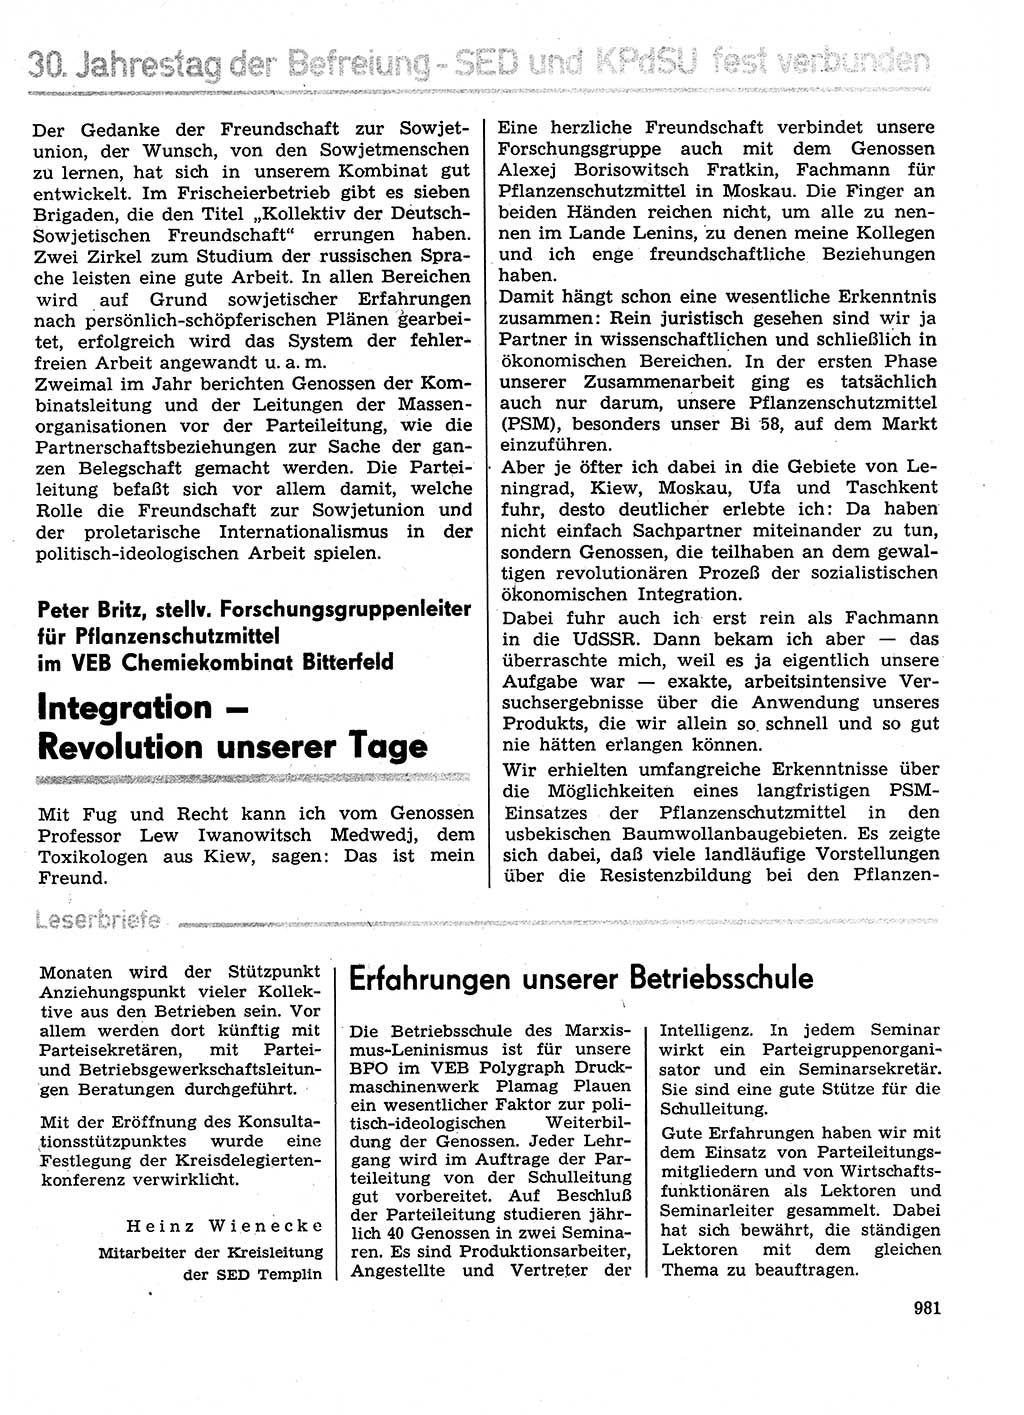 Neuer Weg (NW), Organ des Zentralkomitees (ZK) der SED (Sozialistische Einheitspartei Deutschlands) für Fragen des Parteilebens, 29. Jahrgang [Deutsche Demokratische Republik (DDR)] 1974, Seite 981 (NW ZK SED DDR 1974, S. 981)